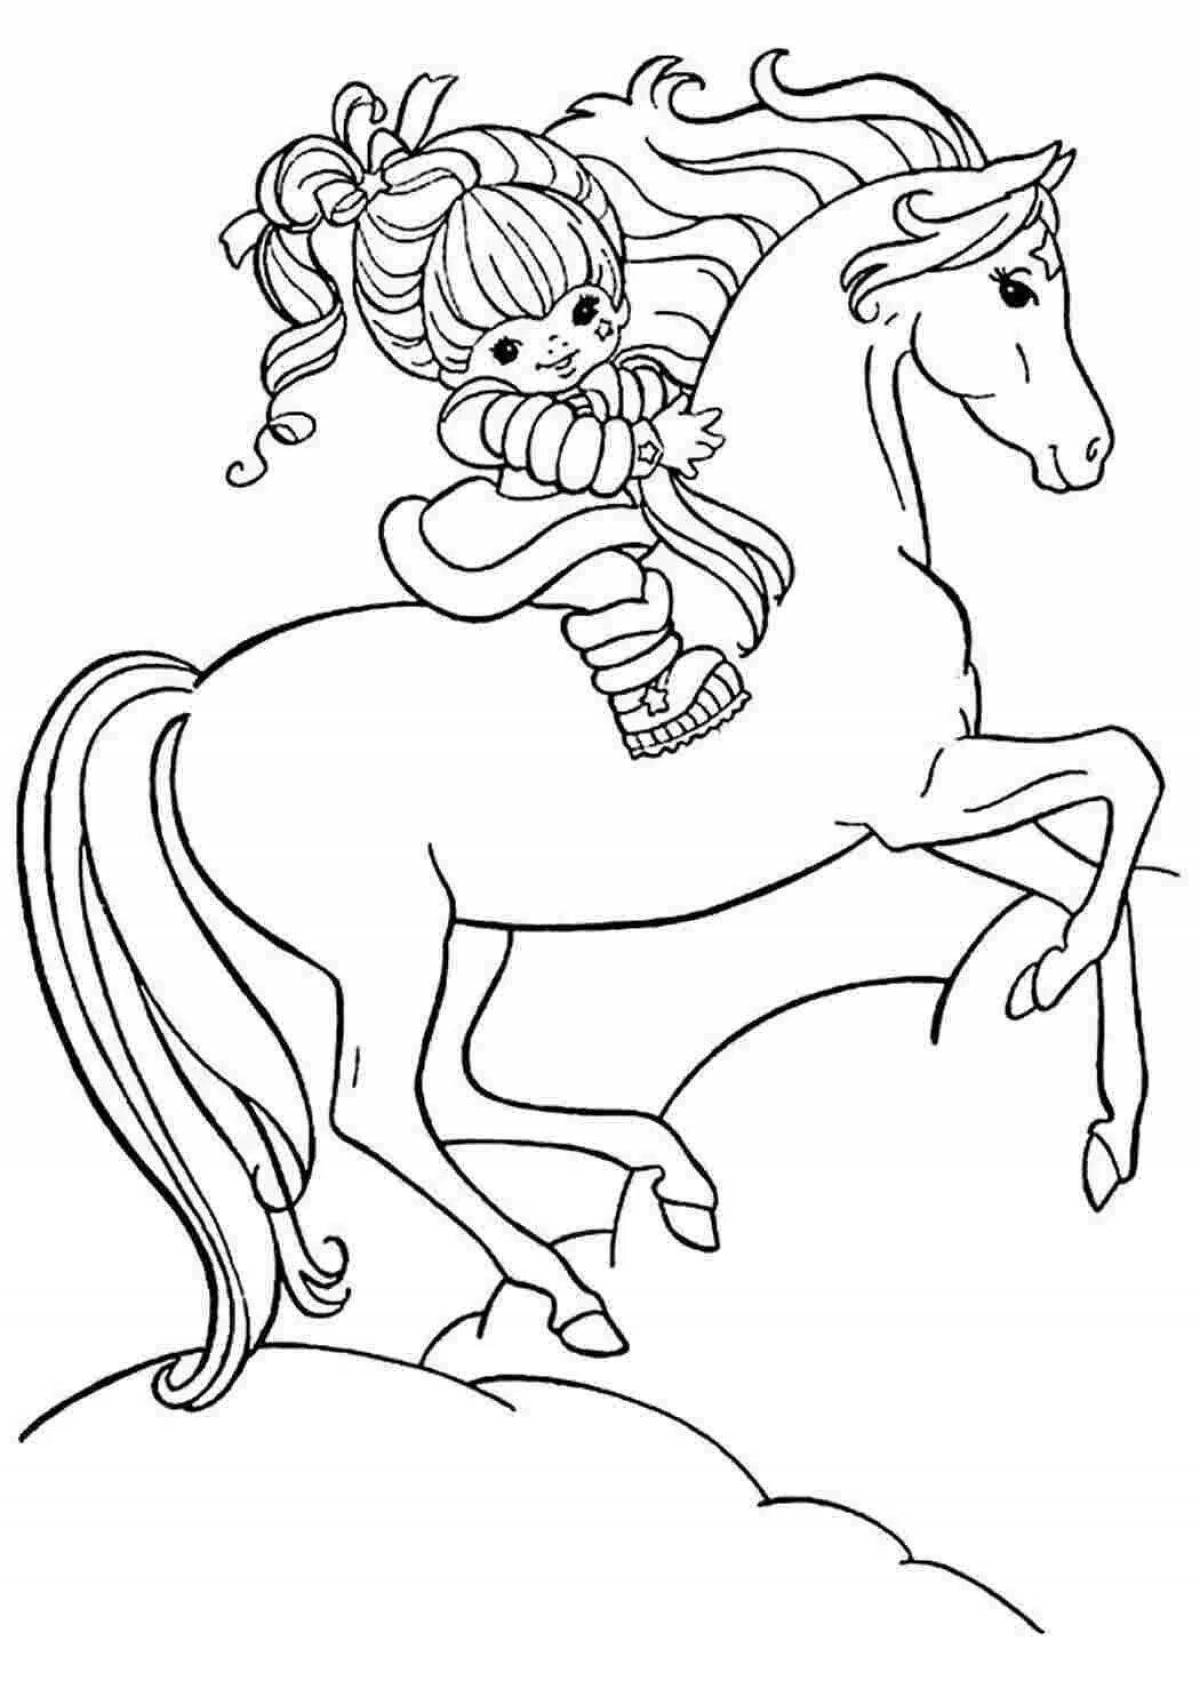 Коник печать. Раскраска. Лошадка. Лошадка раскраска для детей. Картинки для раскрашивания лошадки. Разукрашка лошадь.